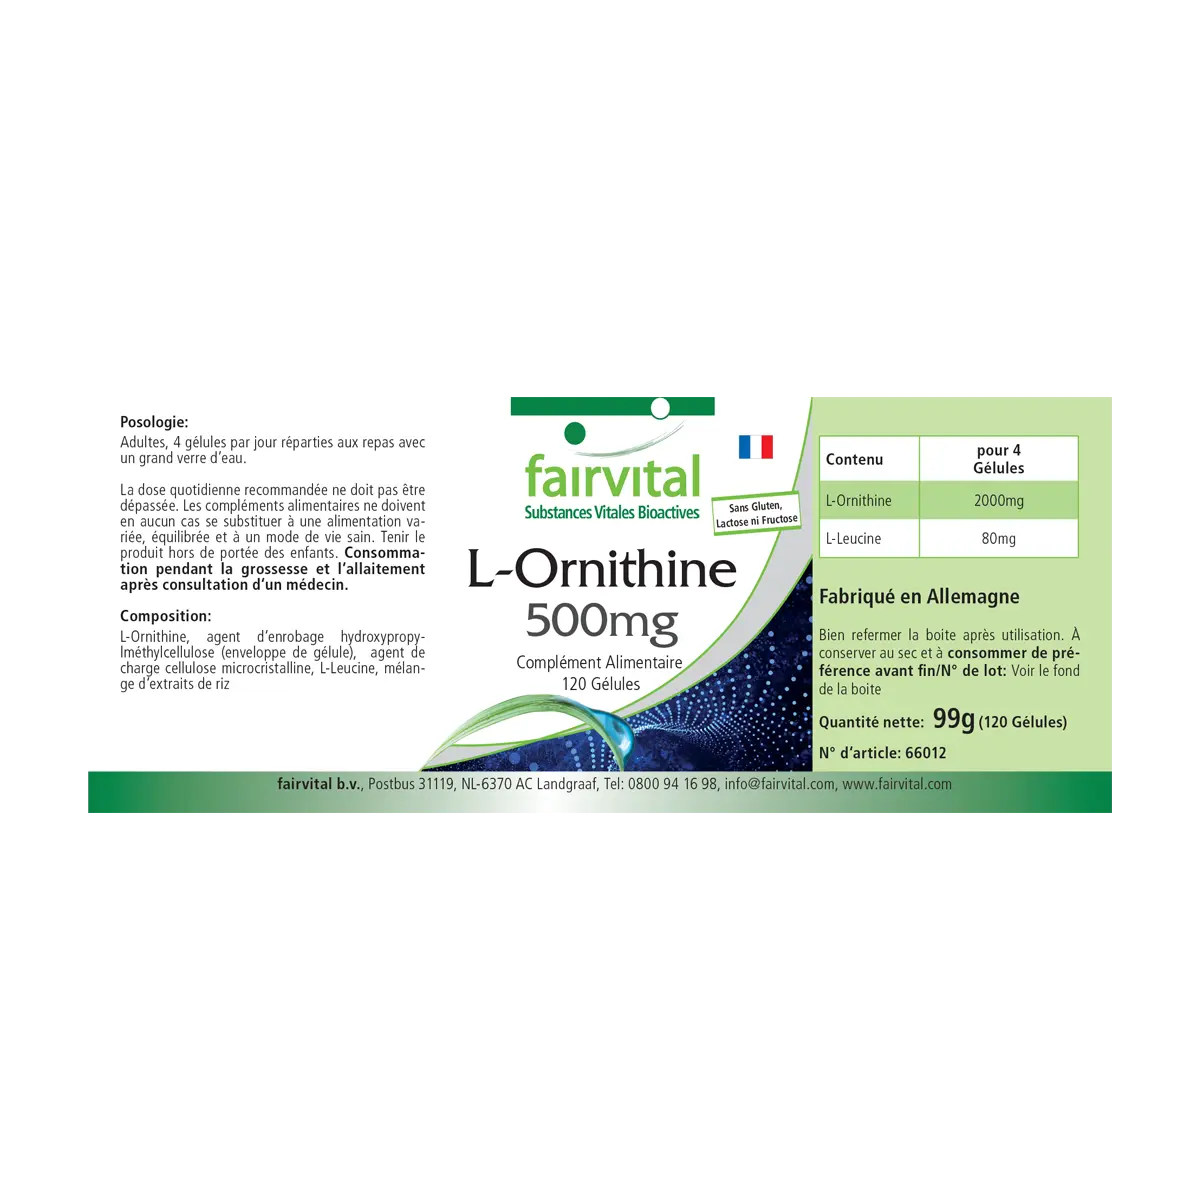 L-Ornitina 500 mg – 120 capsule